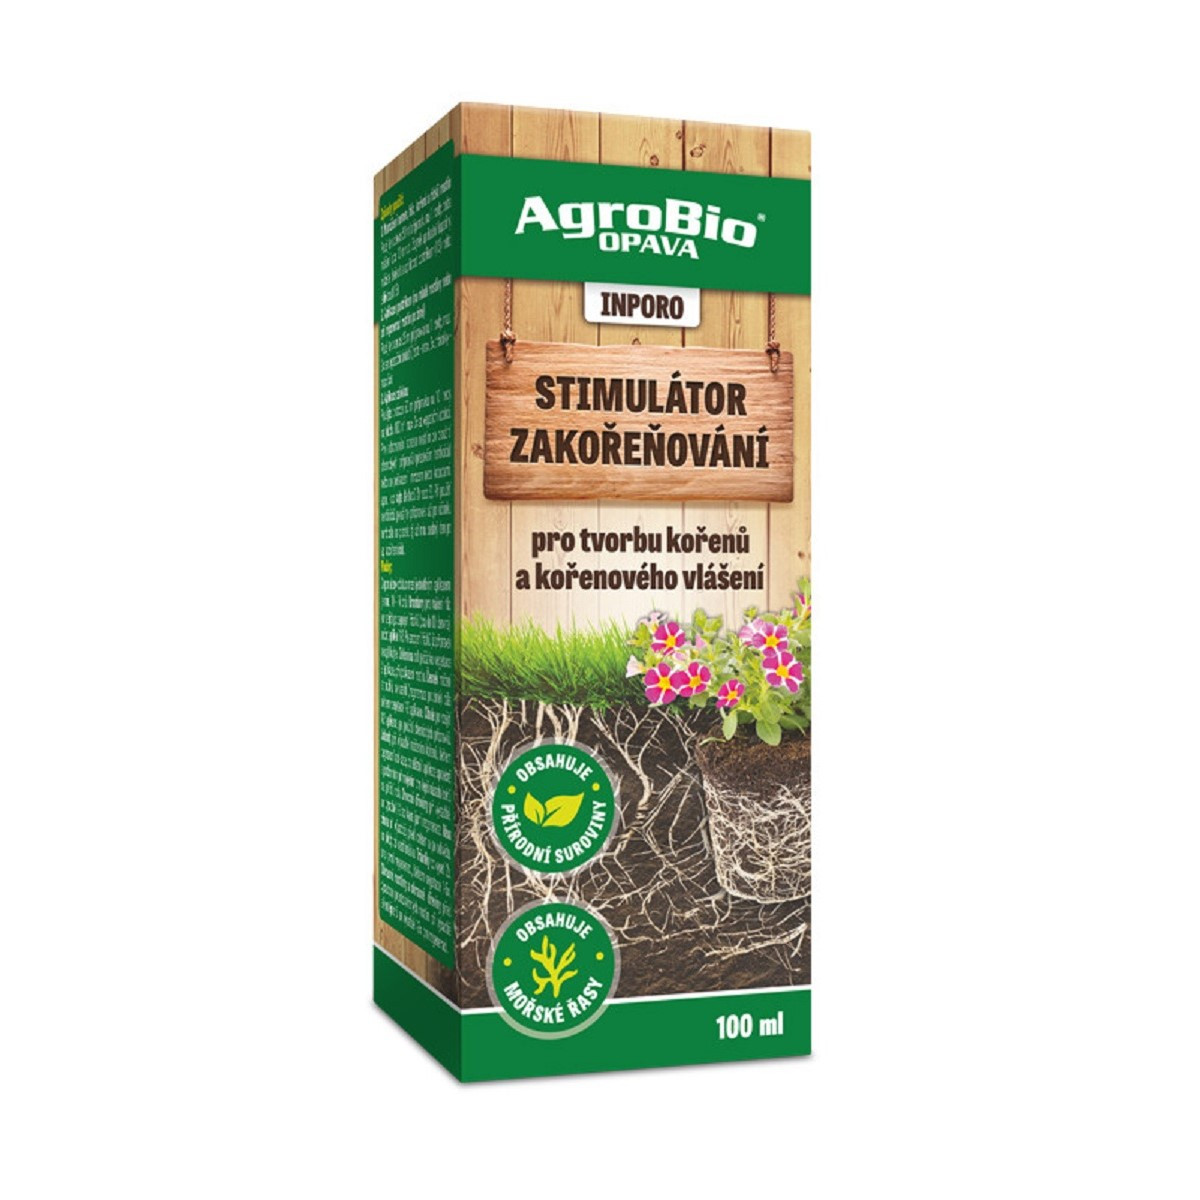 Inporo Stimulátor zakořeňování - AgroBio - přírodní stimulátor - 100 ml